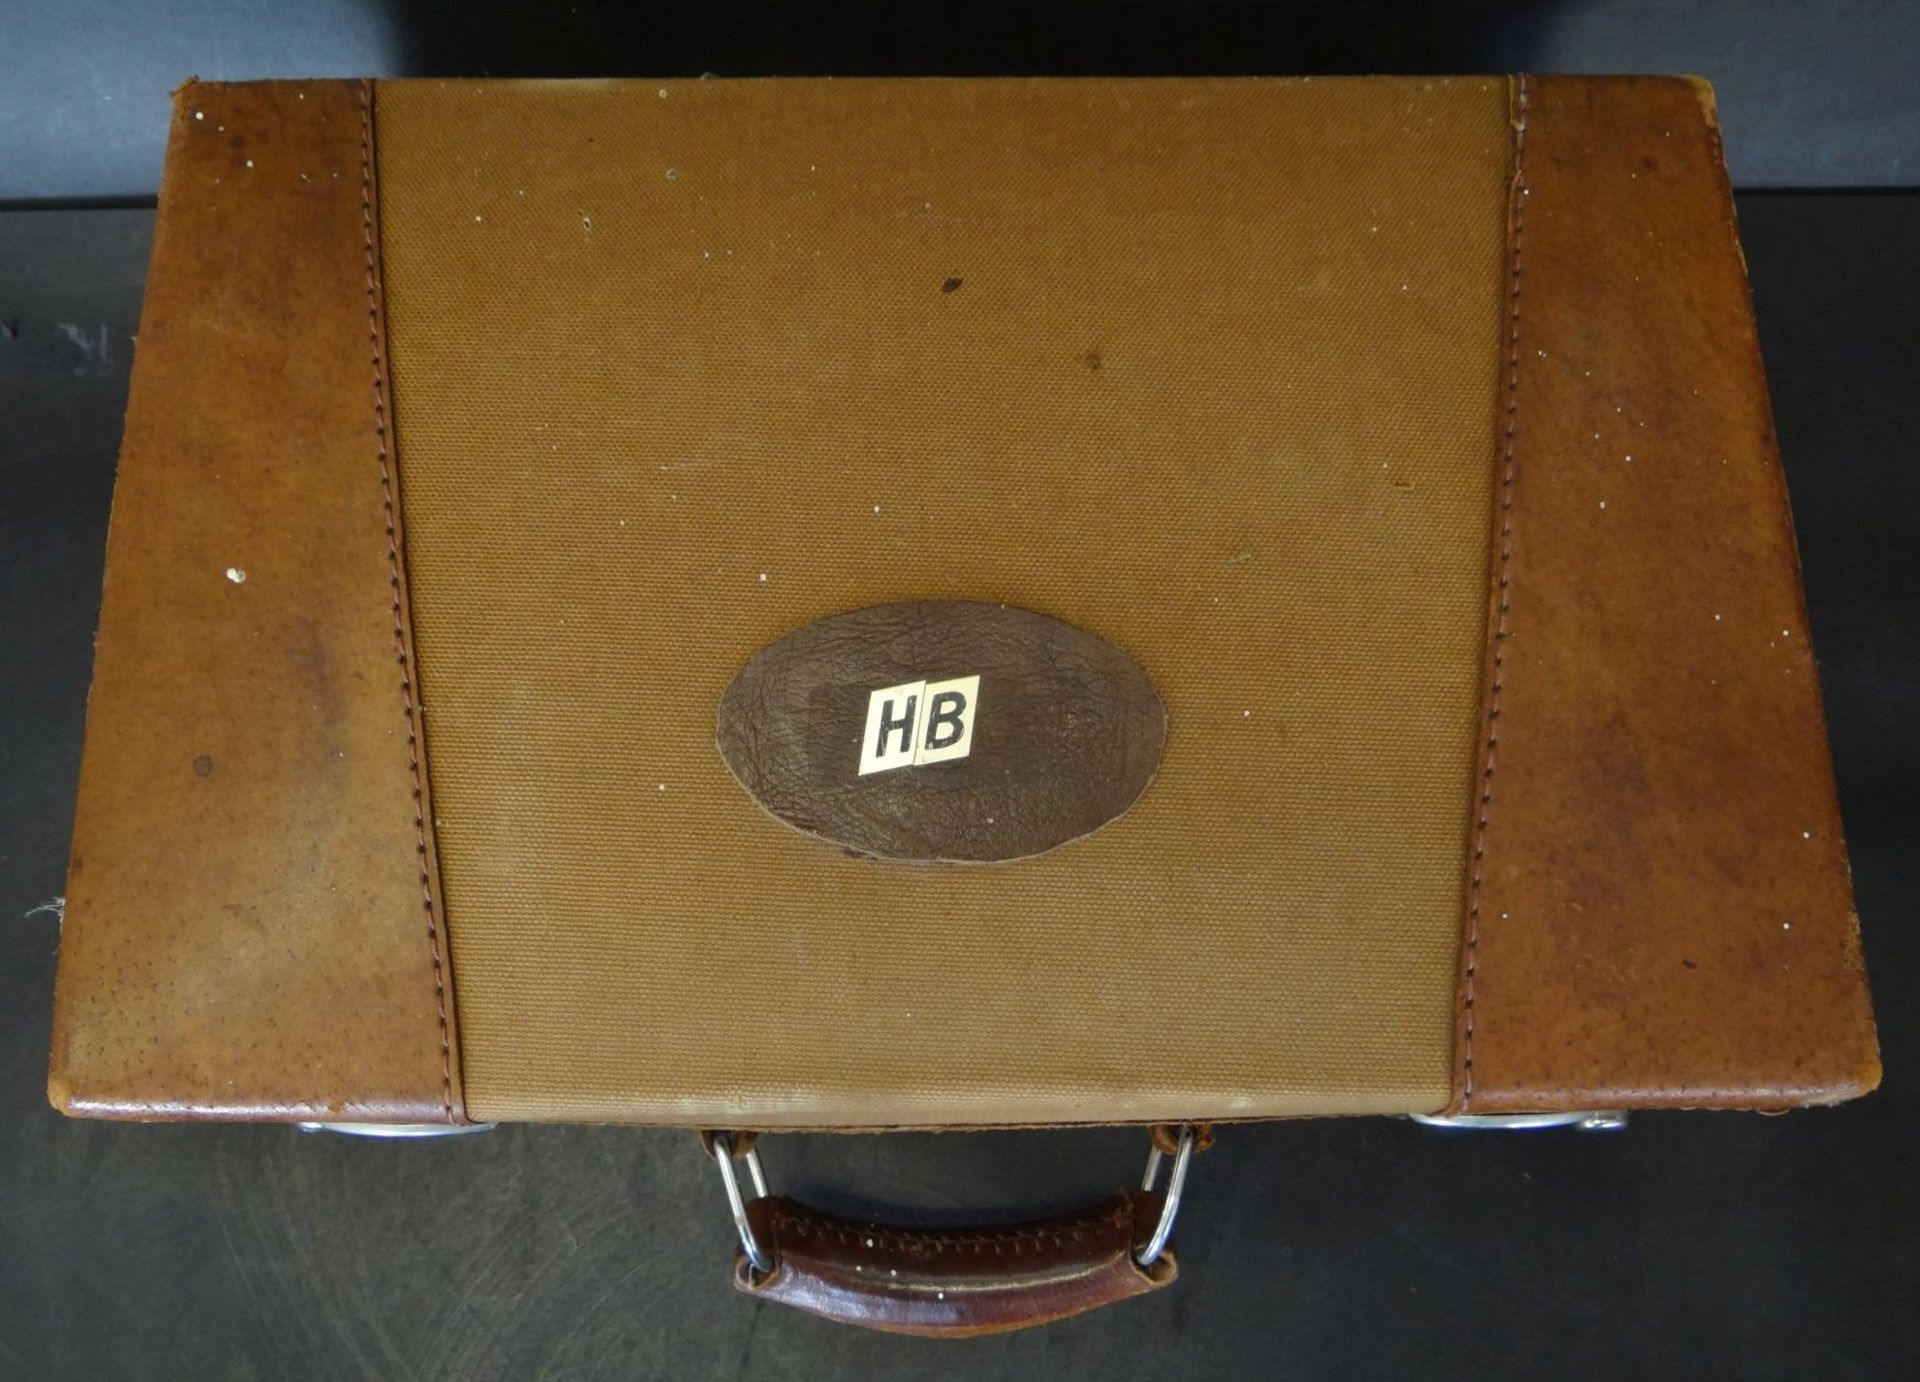 kl. Leder-Handkoffer "Ann Christin", mttiig Stoff, 36x24 cm, Alters-u. Gebrauchsspuren - Bild 2 aus 5